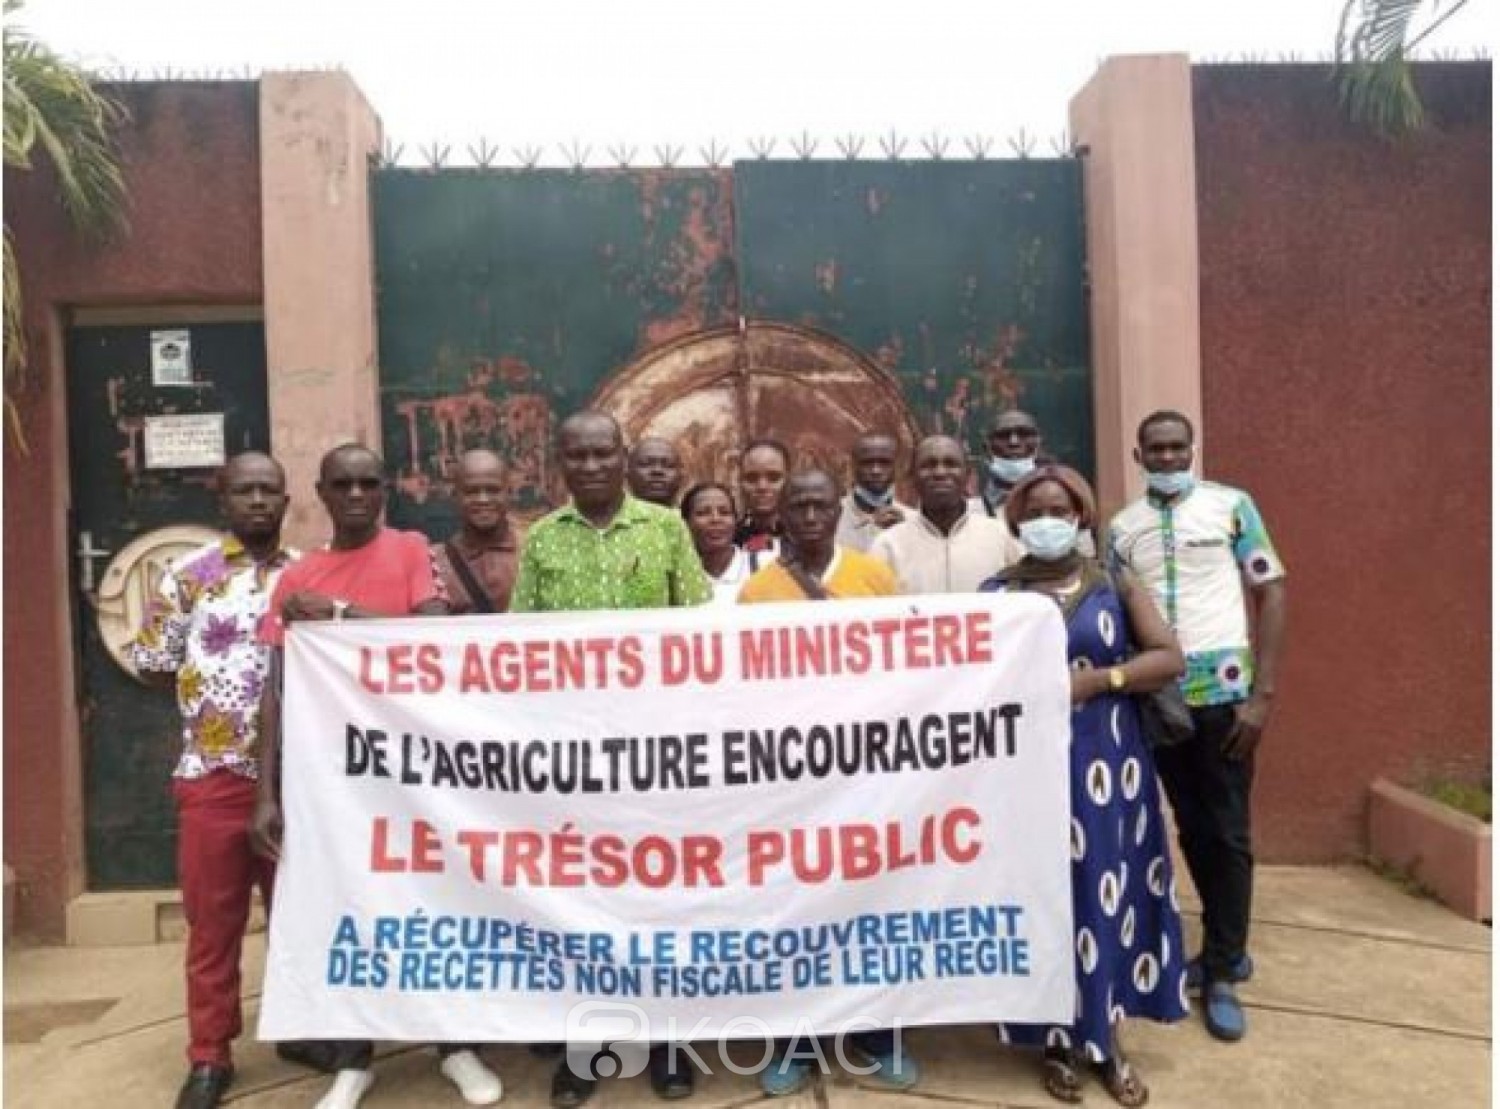 Côte d'Ivoire : Ministère de l'Agriculture, des agents ont entamé une grève pour exiger que le recouvrement des recettes soit du ressort du  Trésor Public